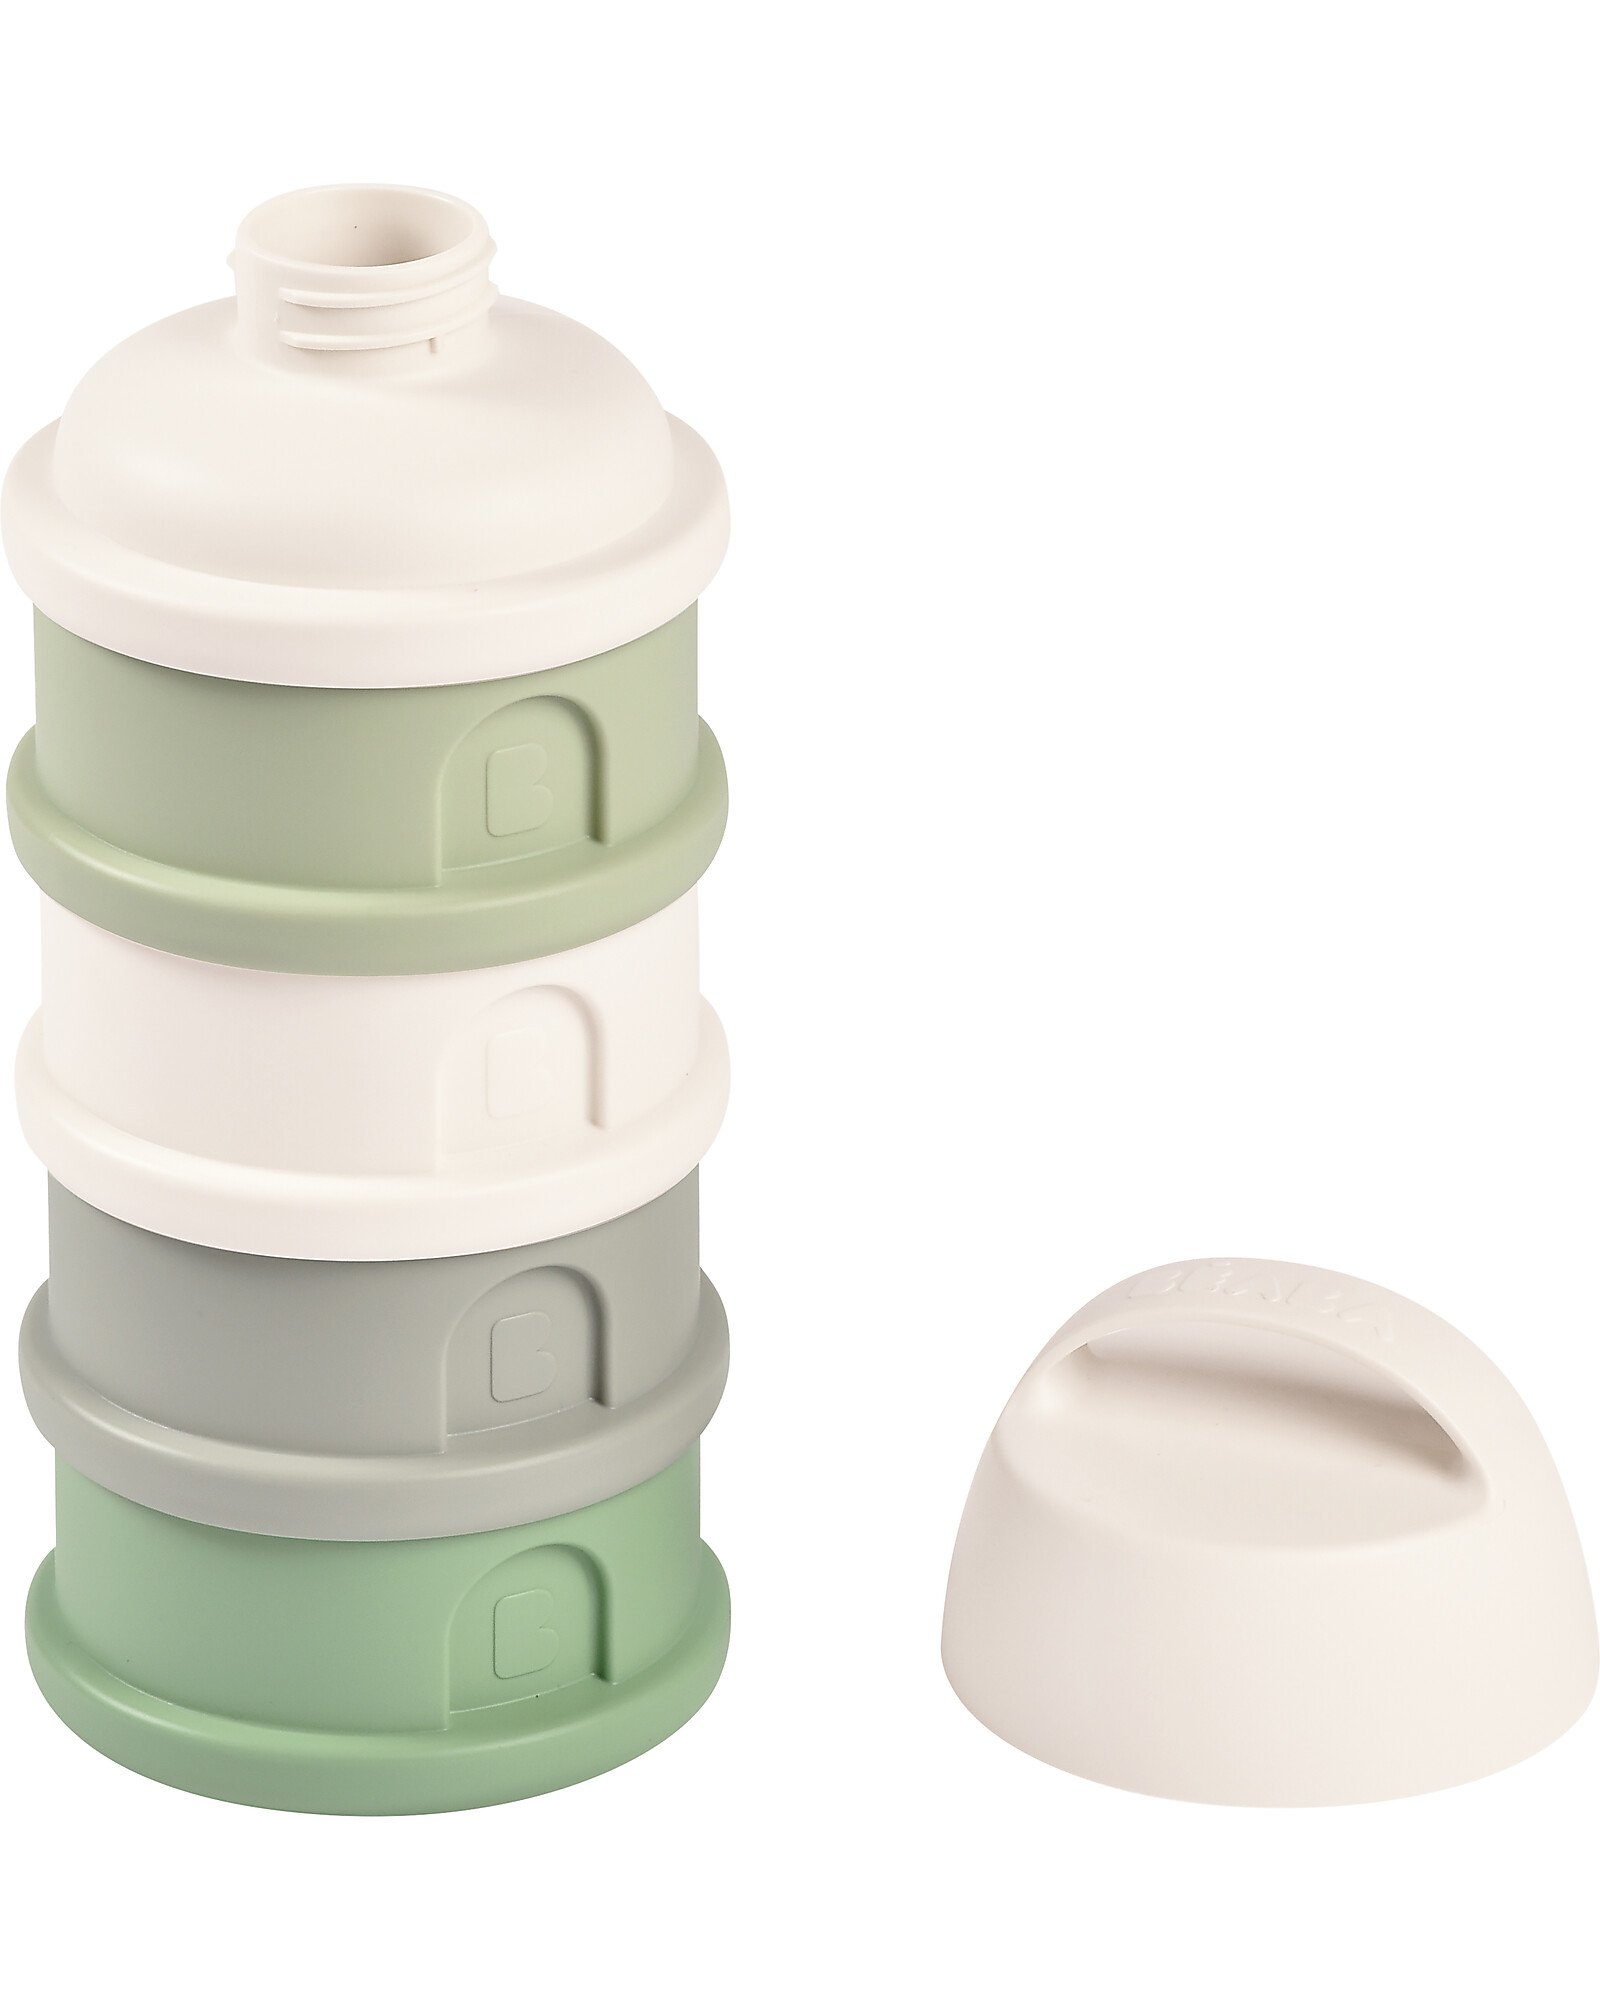 Contenitori per latte in polvere per neonati e bambini - pratici e igienici.